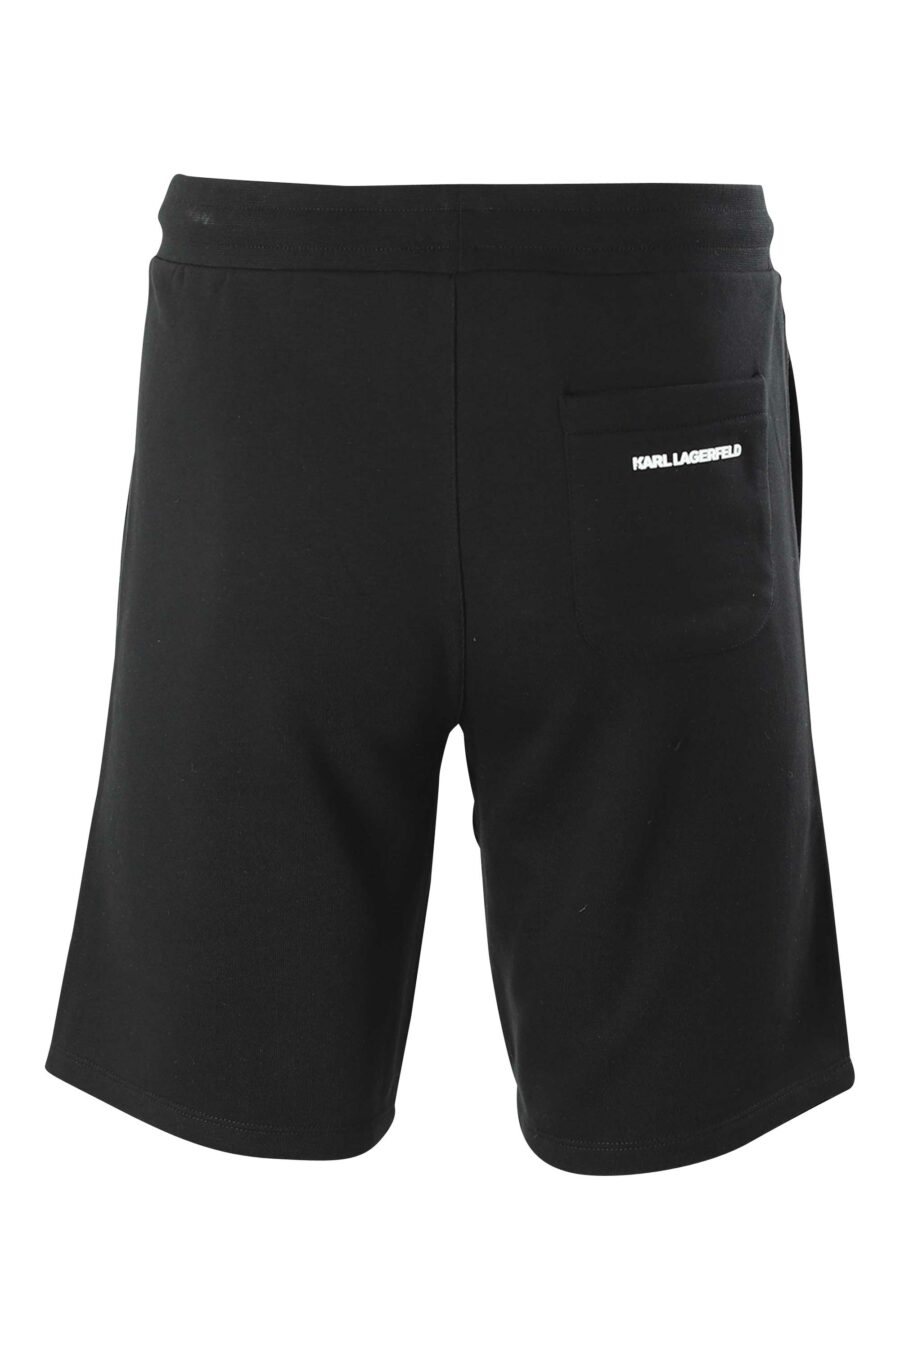 Pantalón de chándal corto negro con logo de goma - 4062226267267 3